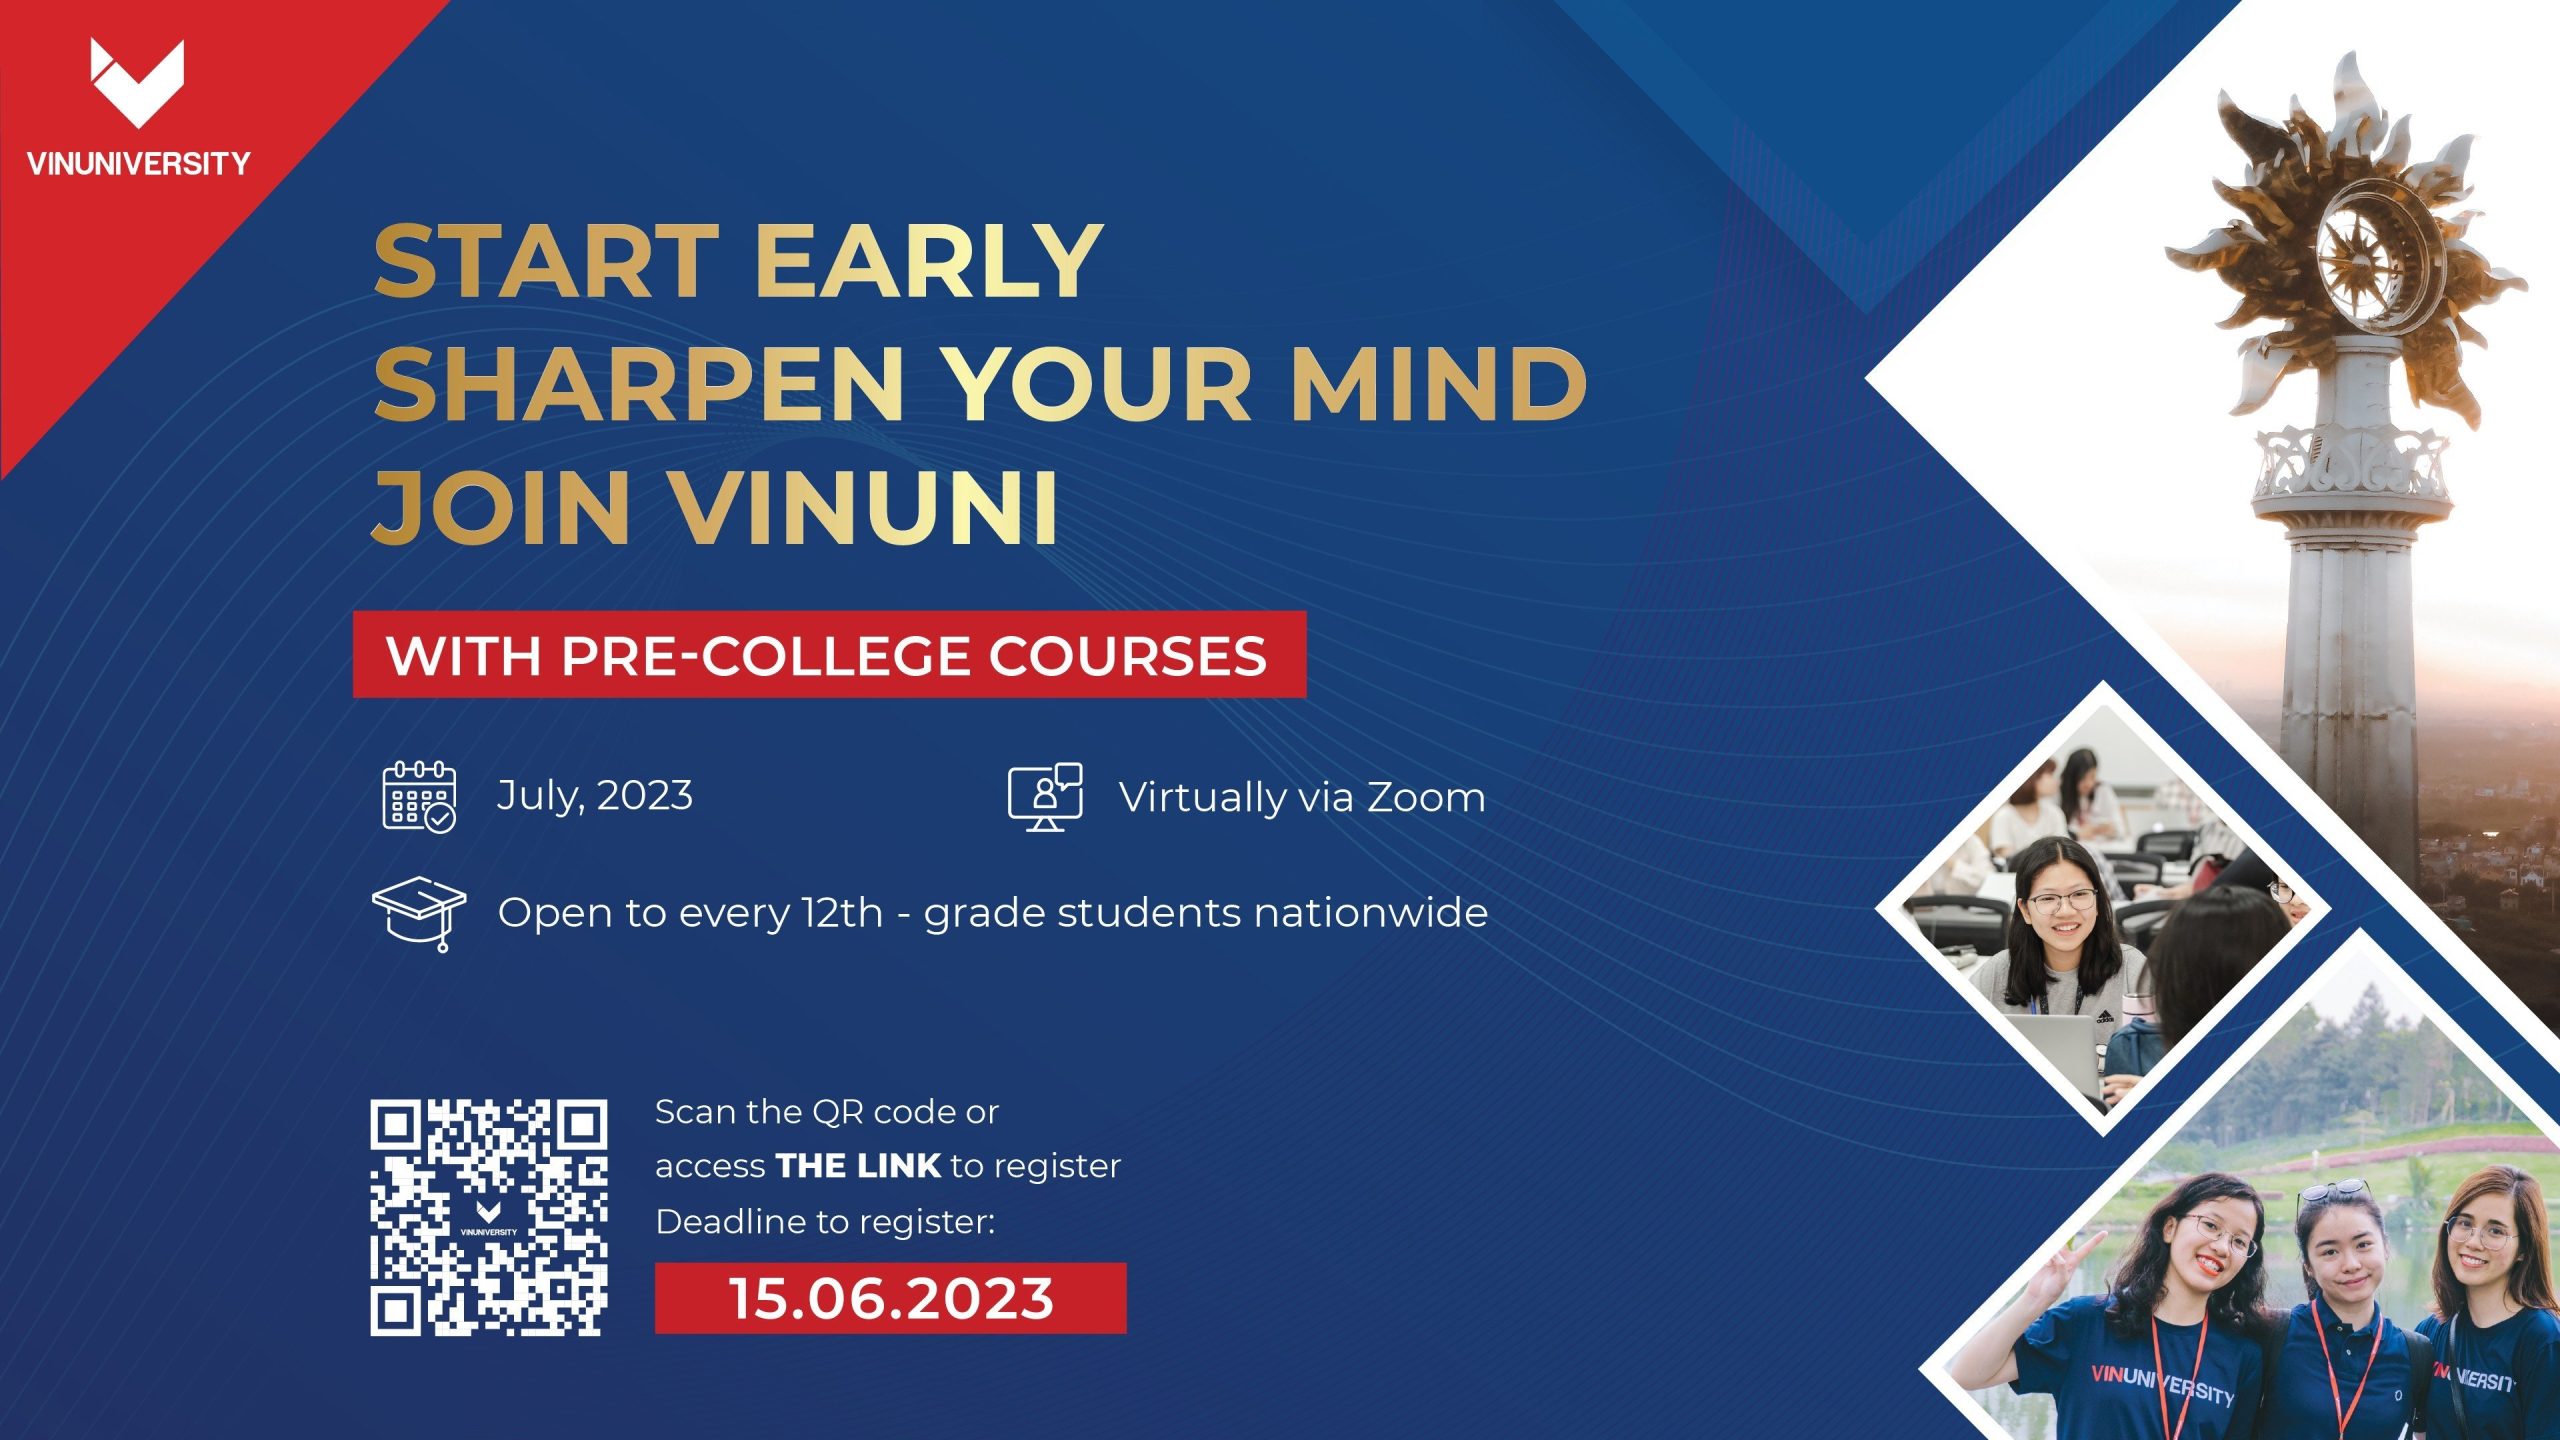 Chạy đà sớm – Củng cố kỹ năng – Bứt tốc dẫn đầu với Chương trình Pre-college – Đào tạo kỹ năng tại Trường Đại học VinUni